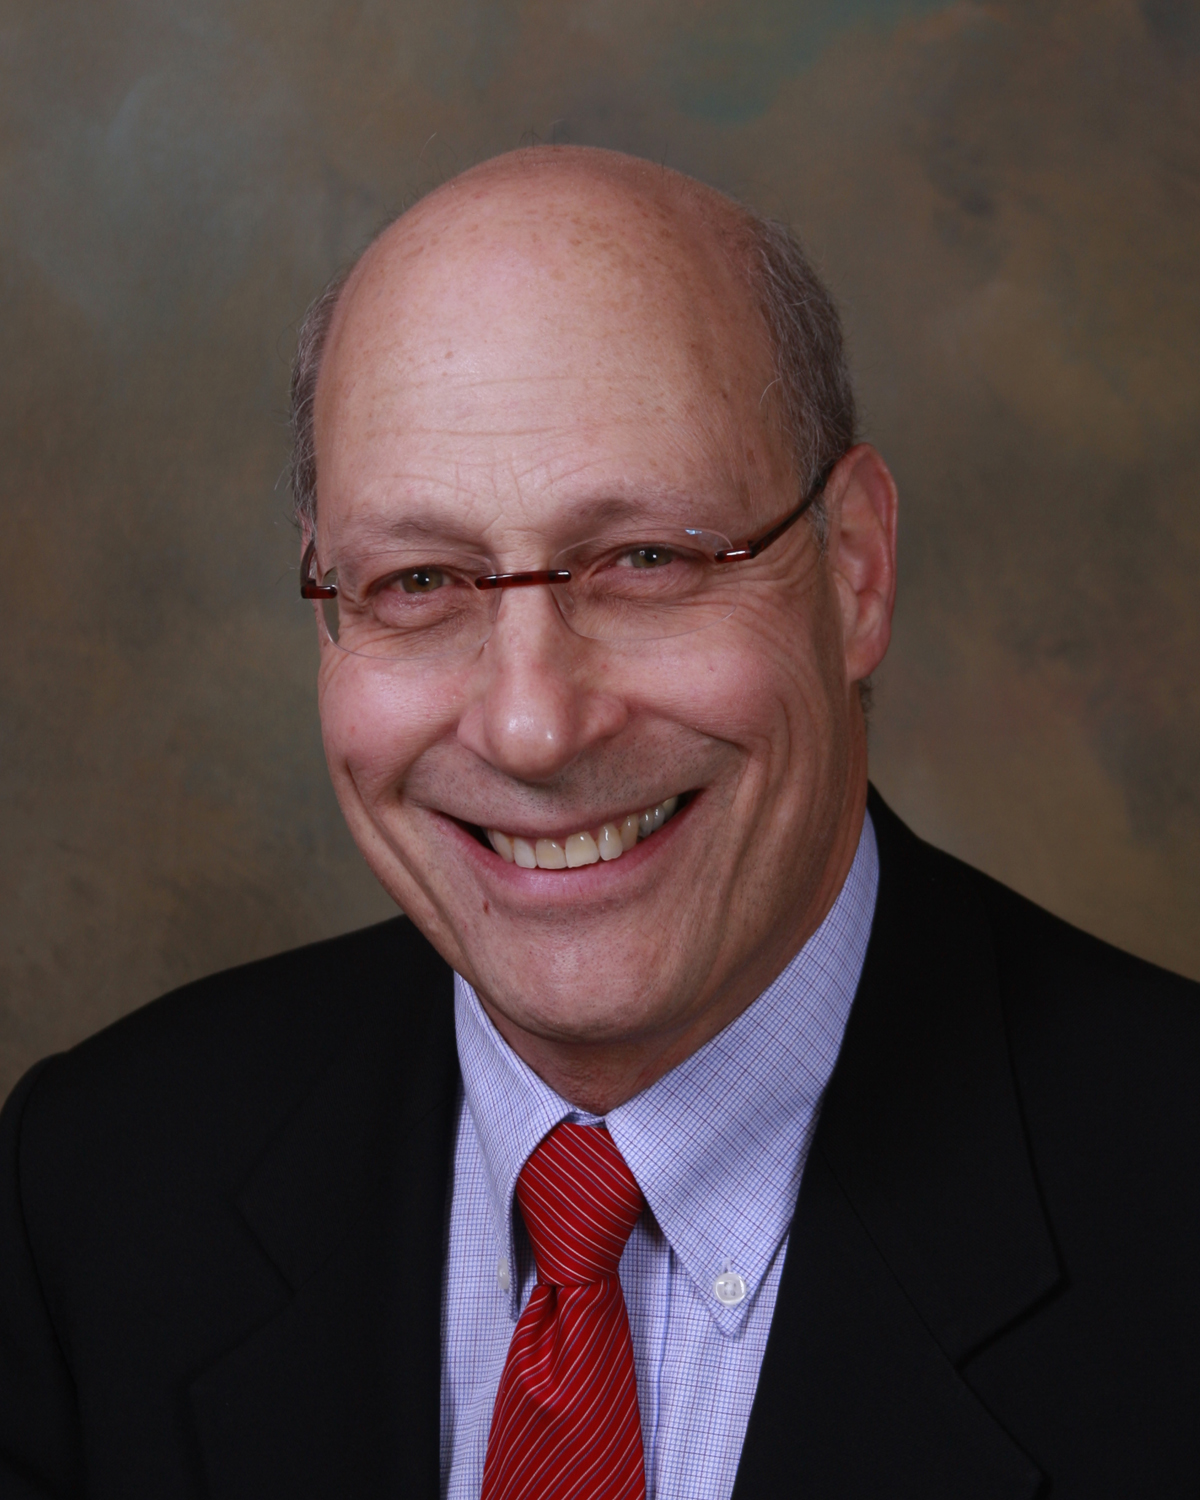 Dr. David Rothman